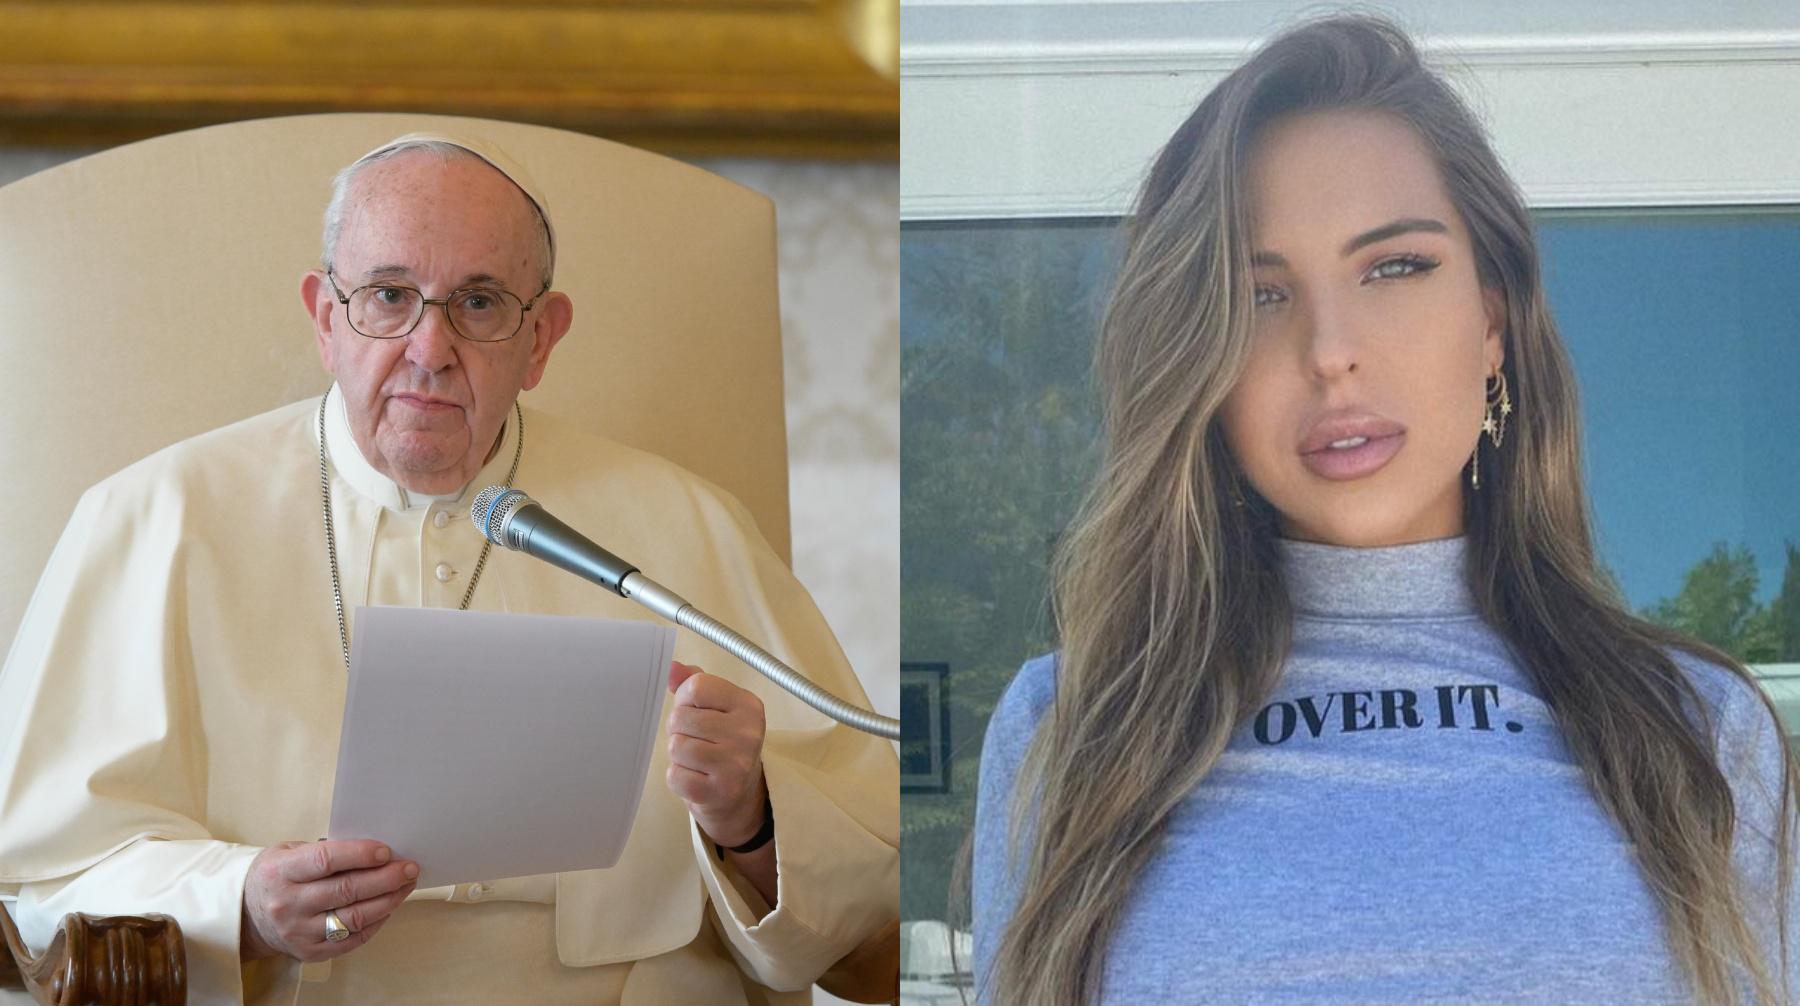 Natalia Garibotto, modelo brasileña que recibió un "like" de la cuenta Instagram del  papa Francisco, es streamer en la plataforma Twitch y dice ser religiosa. Fotos: @nataagataa en Instagram.